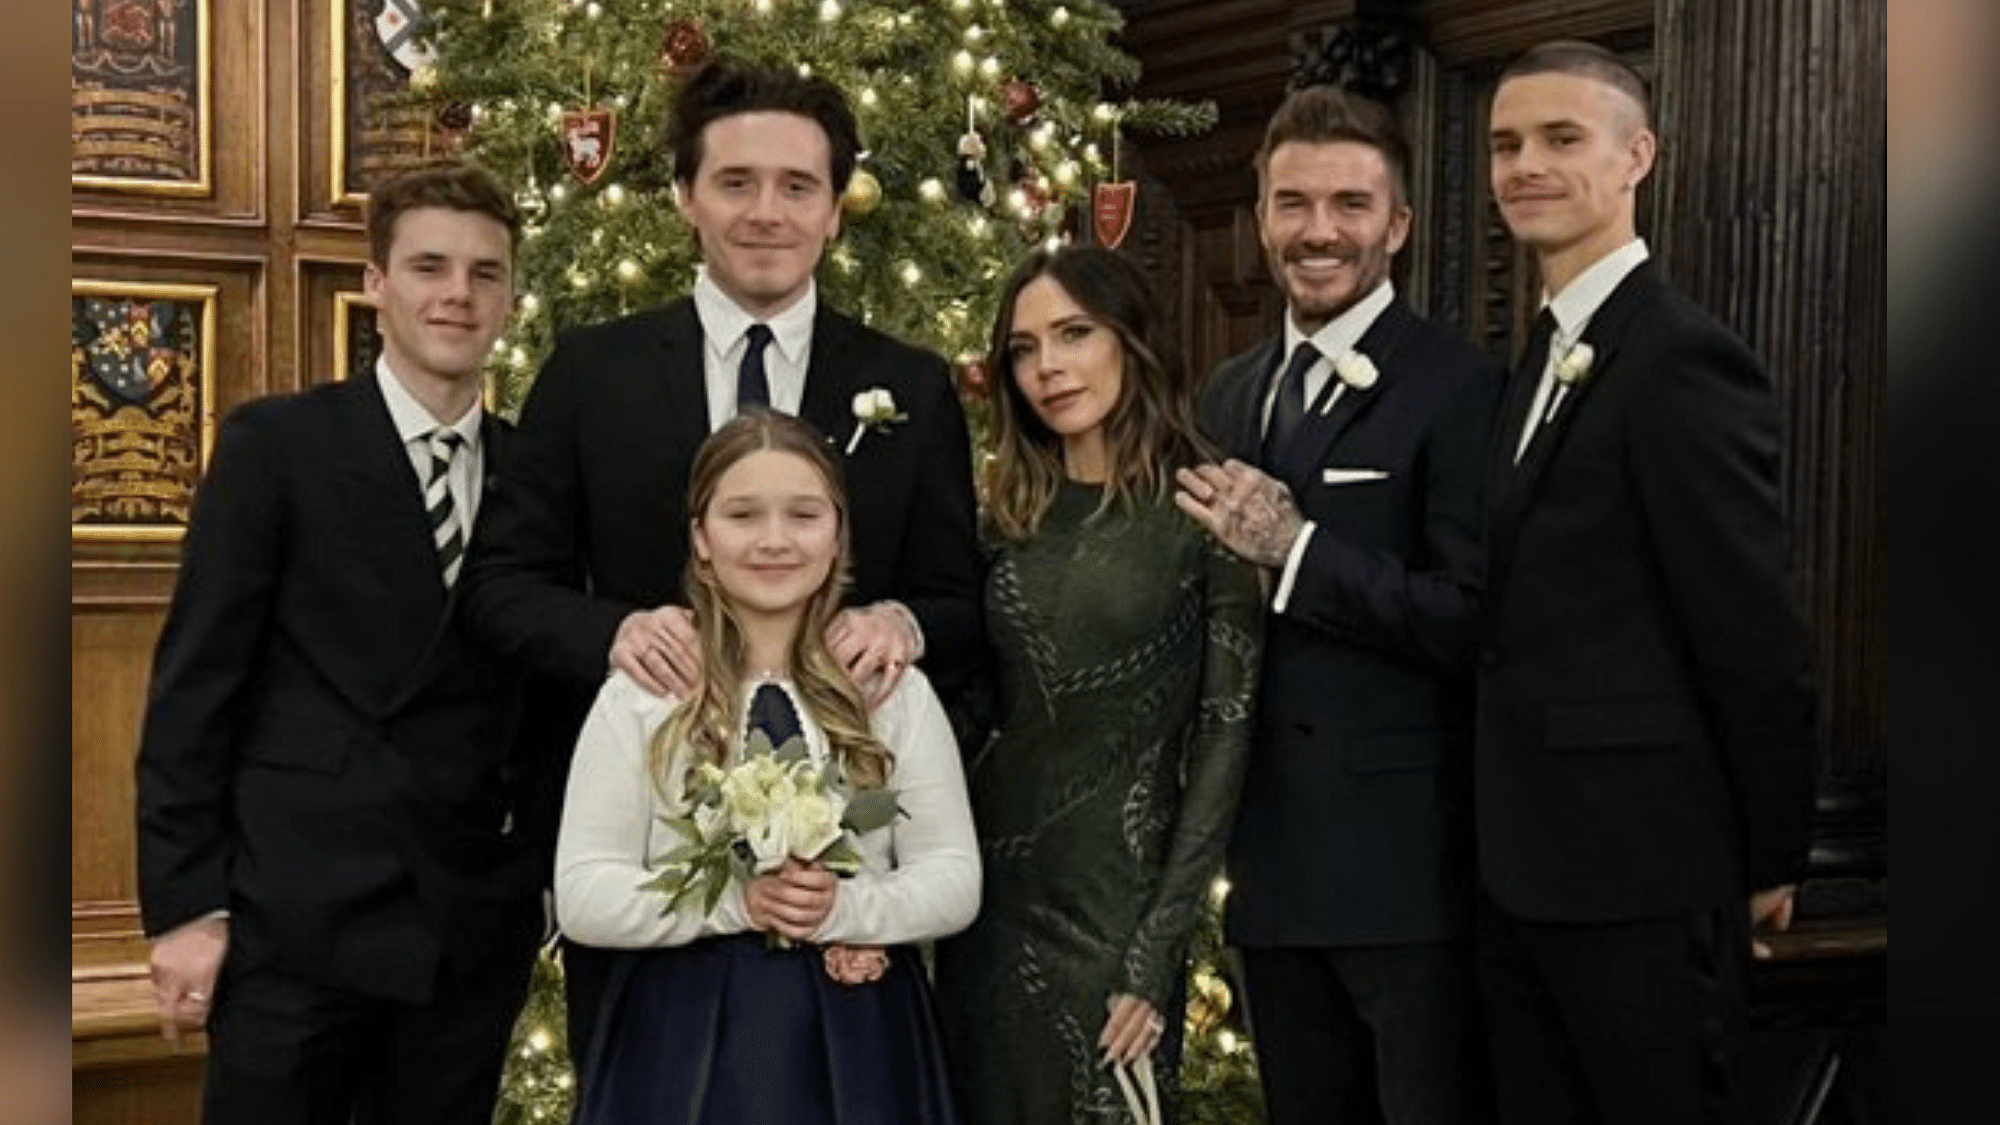 <div class="paragraphs"><p>The Beckham family Christmas photo.</p></div>